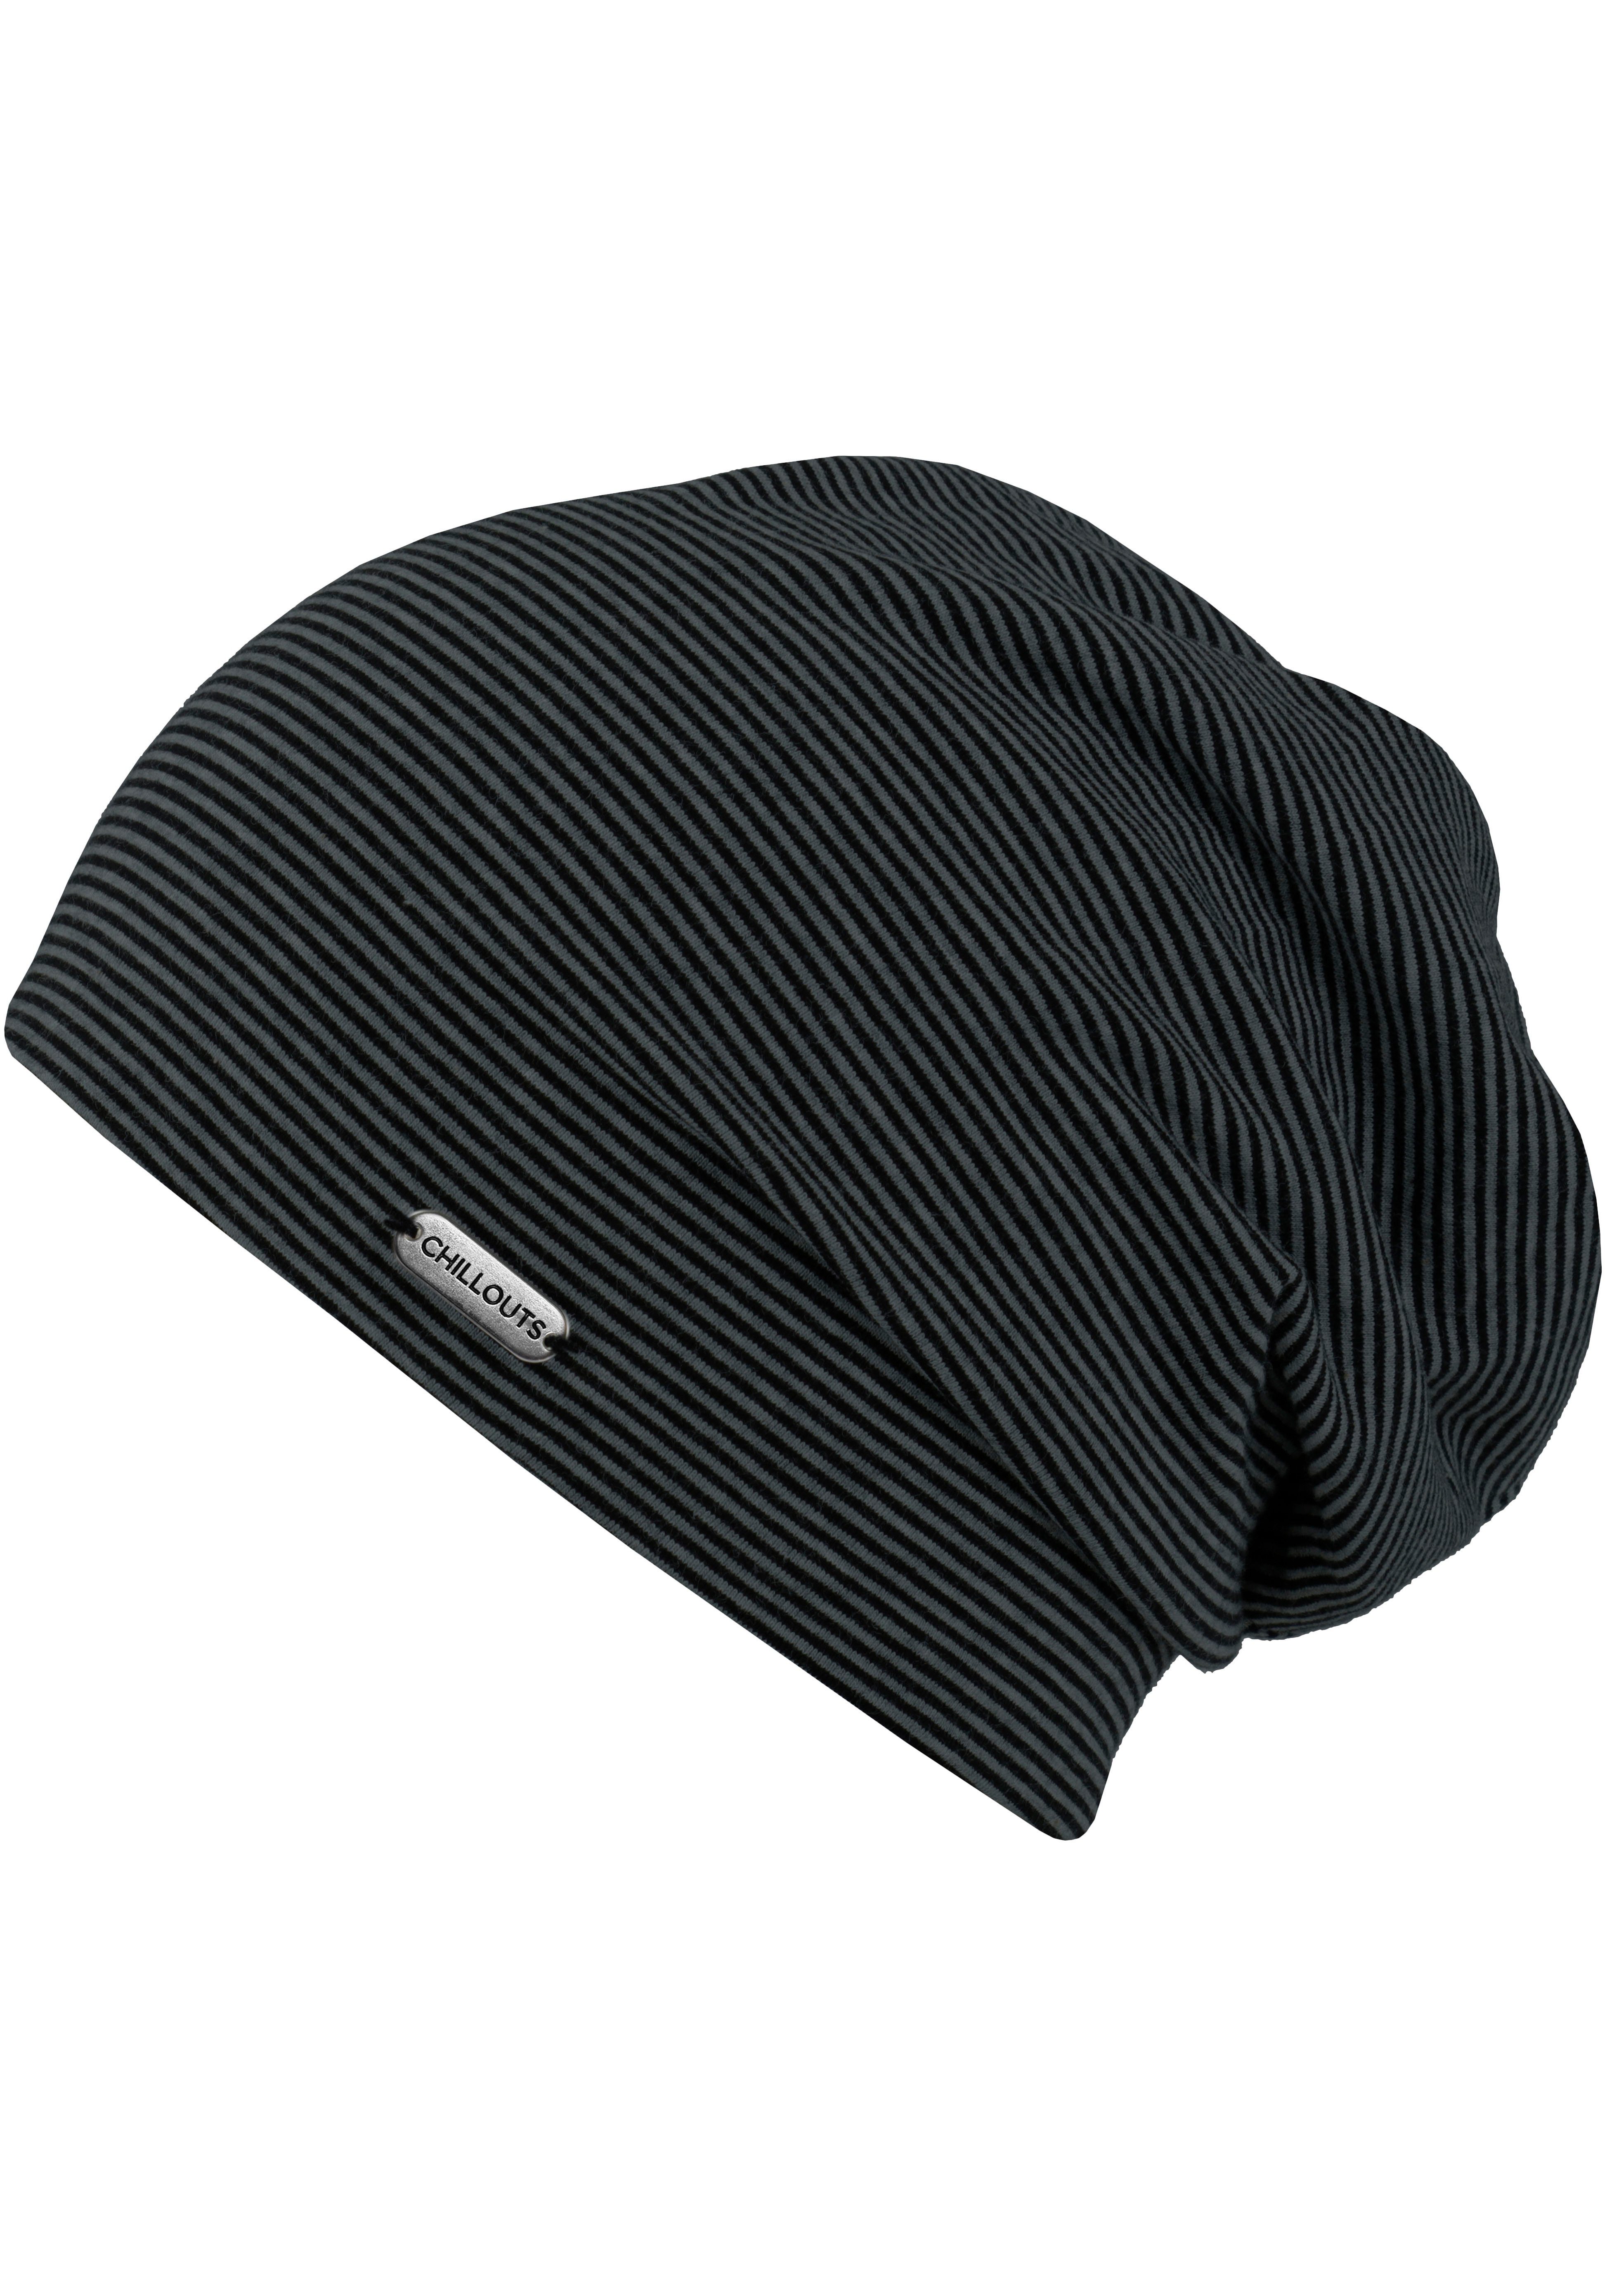 chillouts Beanie Pittsburgh Hat, gestreift dark grey-black